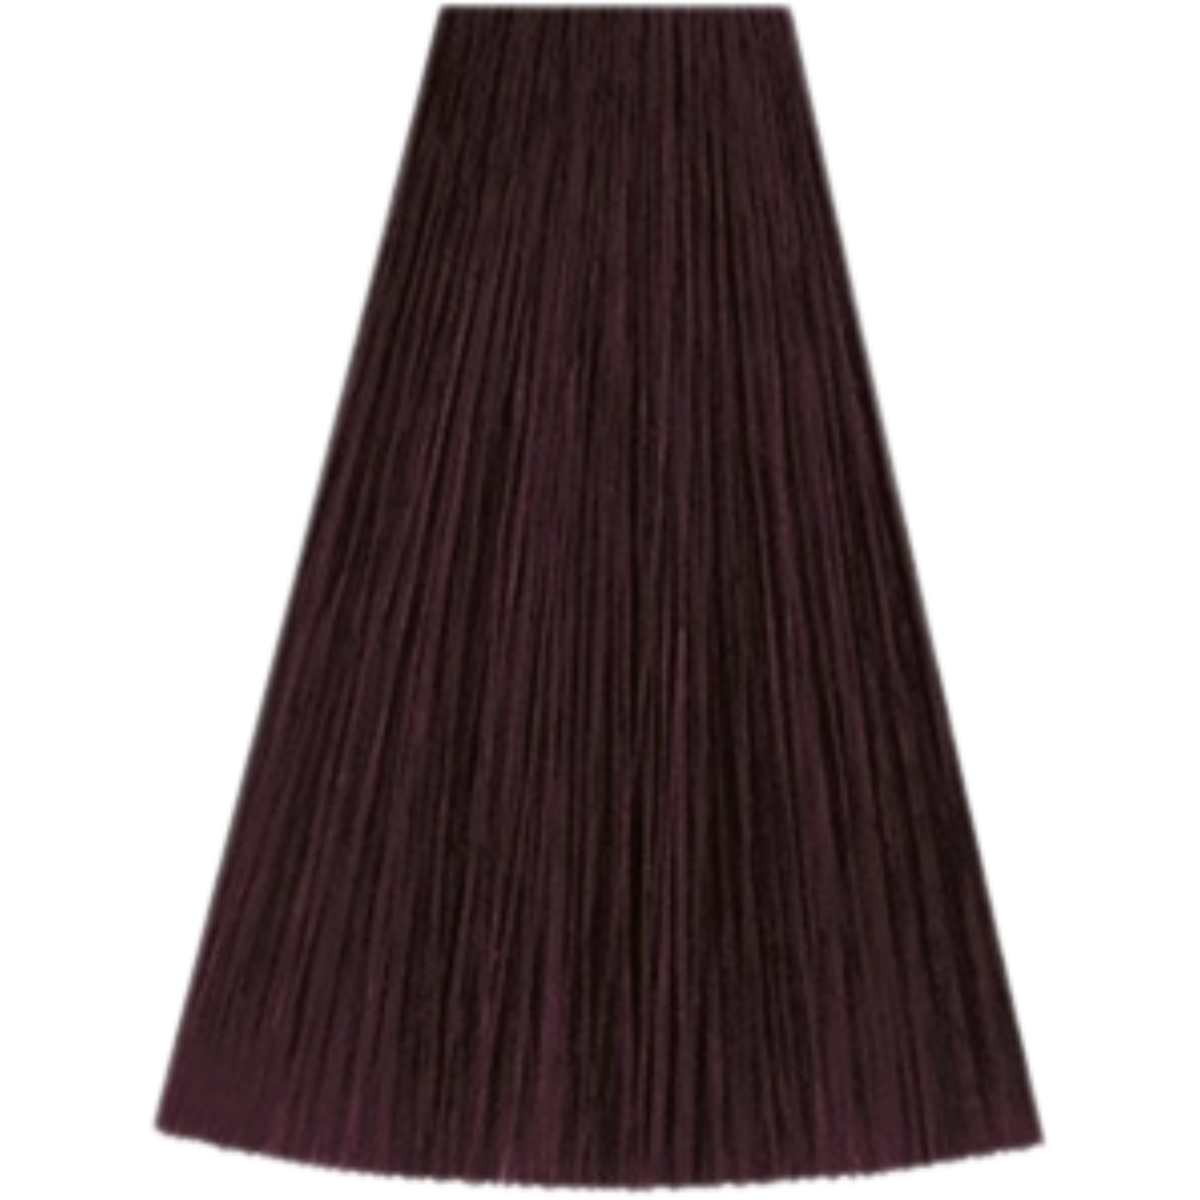 צבע שיער 3/6 DARK BROWN VIOLET קאדוס KADUS צבע לשיער 60 גרם